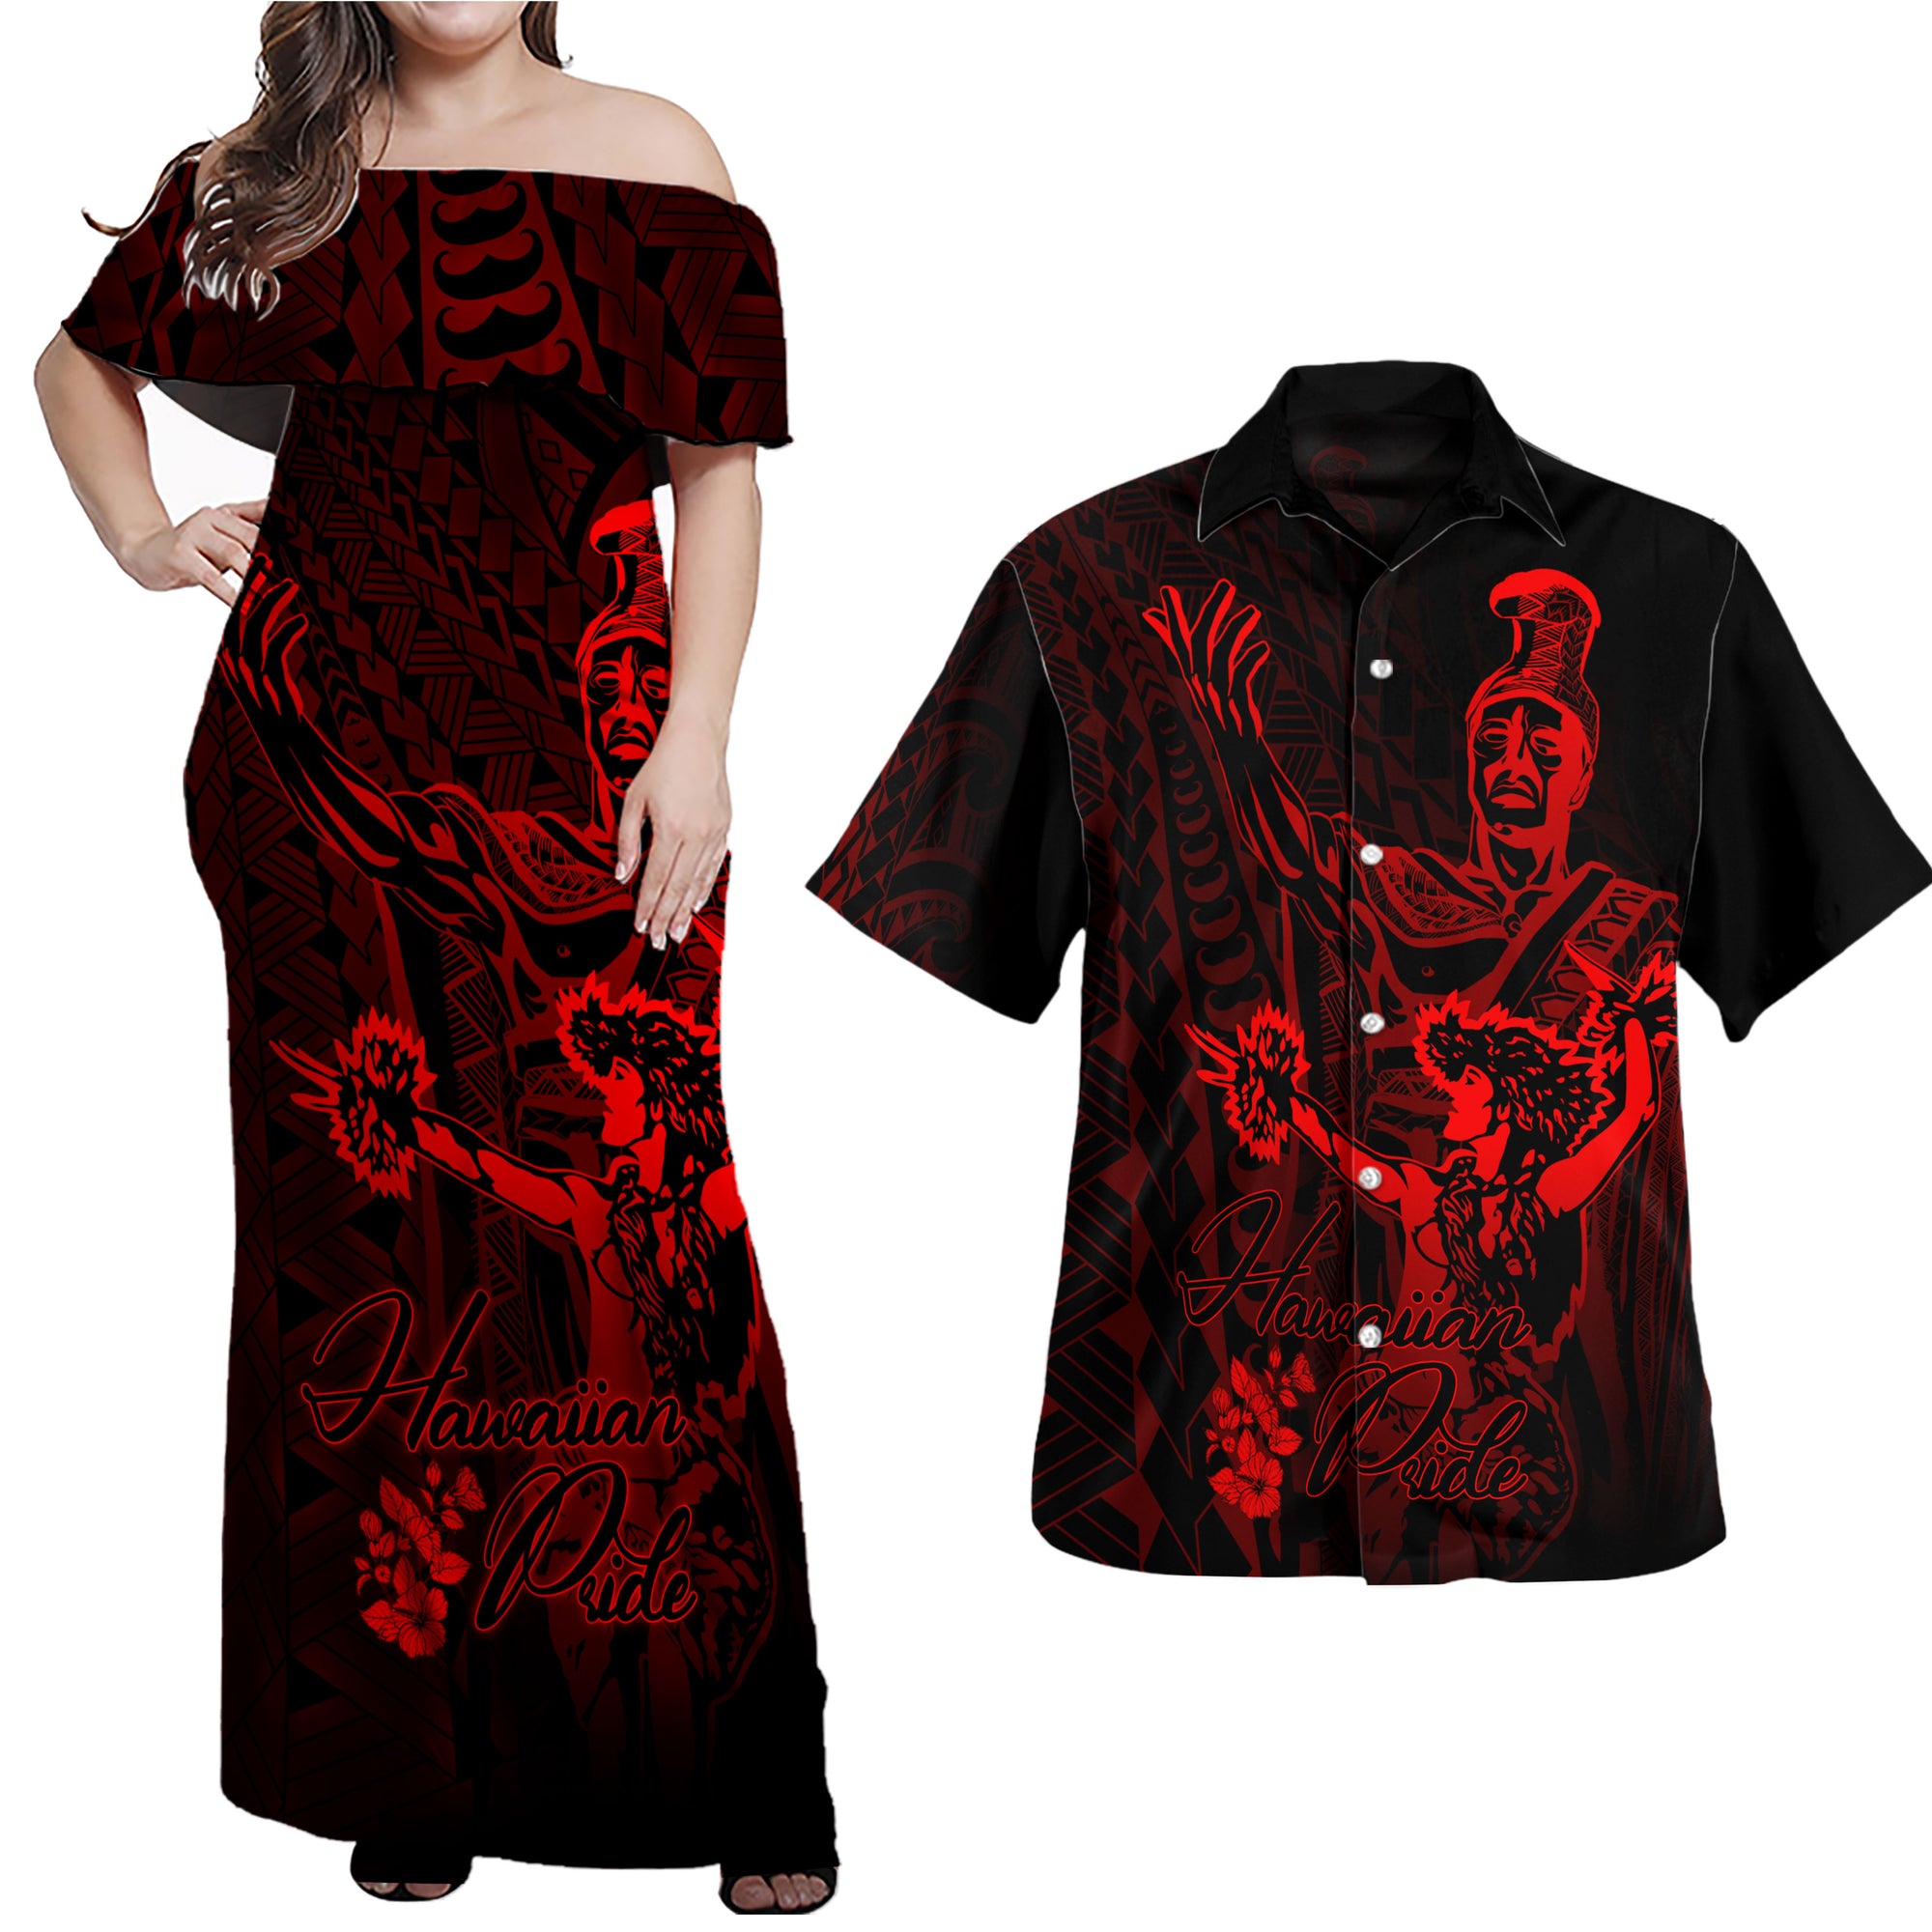 hawaii-polynesian-combo-dress-and-hawaiian-shirt-king-of-hawaii-with-hawaiian-girls-red-version